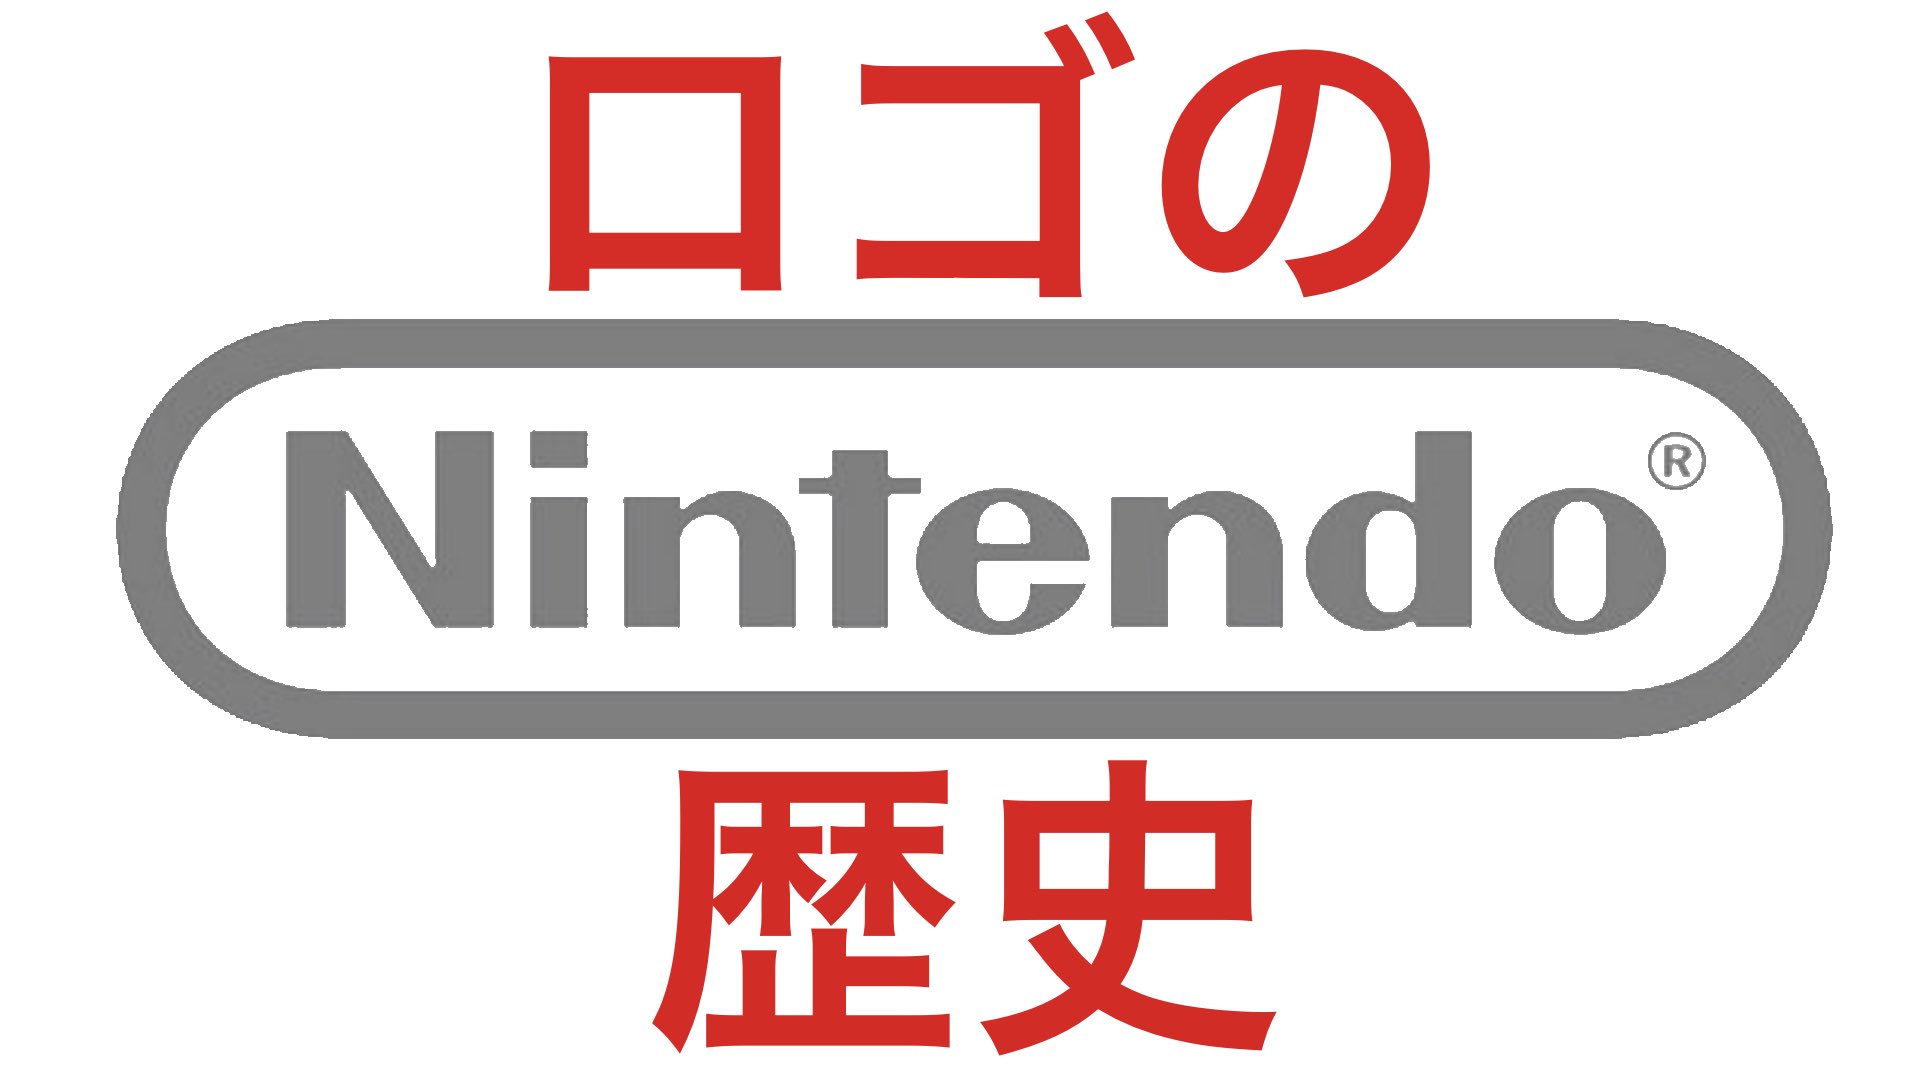 تويتر Micchan Dictionary على تويتر T Co G7sjnovy8u 任天堂 Nintendo のロゴの歴史 22 15からプレミア配信 見てね Nintendo Nintendo 任天堂 ニンテンドー ロゴ Logo ロゴの歴史 Logohistory T Co Jidxb4ed4a